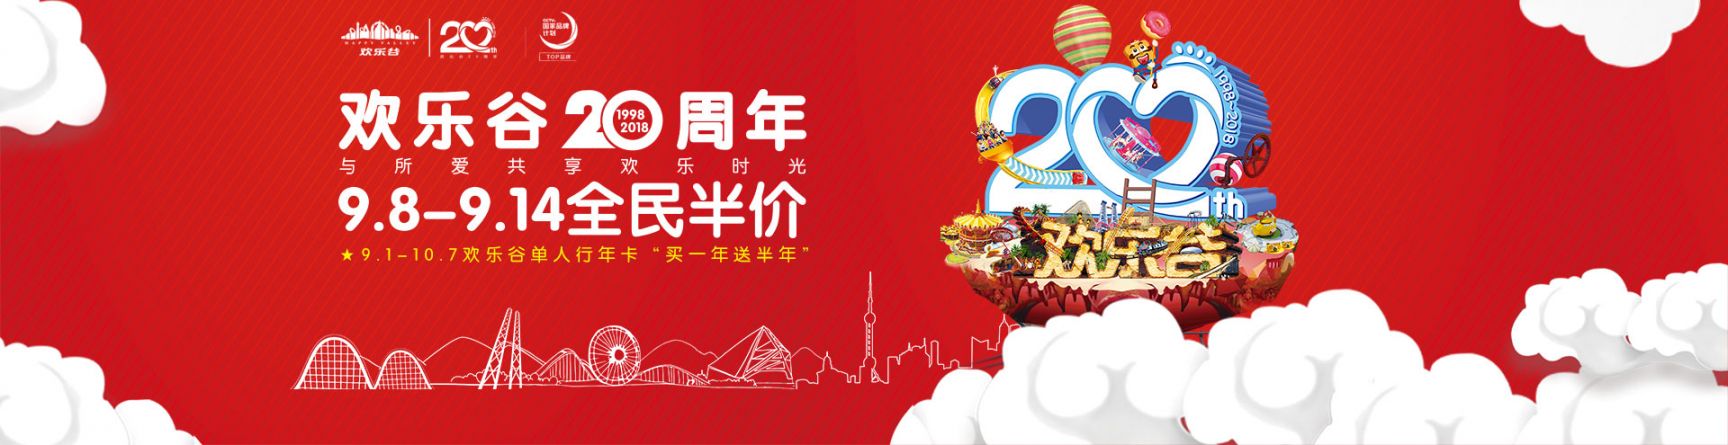 2018上海欢乐谷20周年庆半价抢票 仅需115元